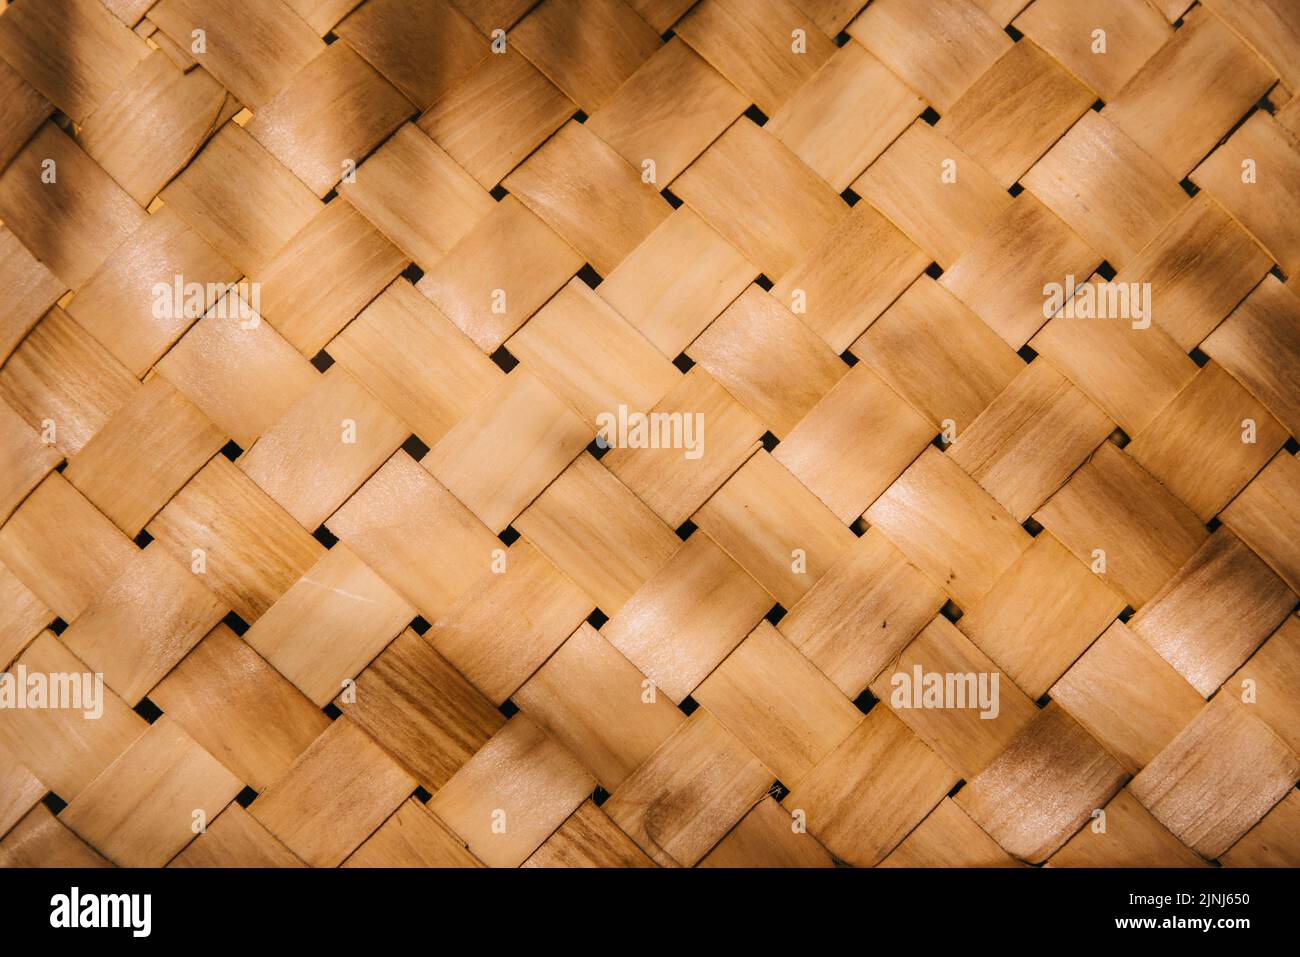 Gewebte Bambus Stroh Textur Hintergrund. Natürliches, organisches Weidenmuster und Handflächenschattenlicht für die Platzierung von Beauty- und Modeprodukten. Neutrale Ästhetik Stockfoto